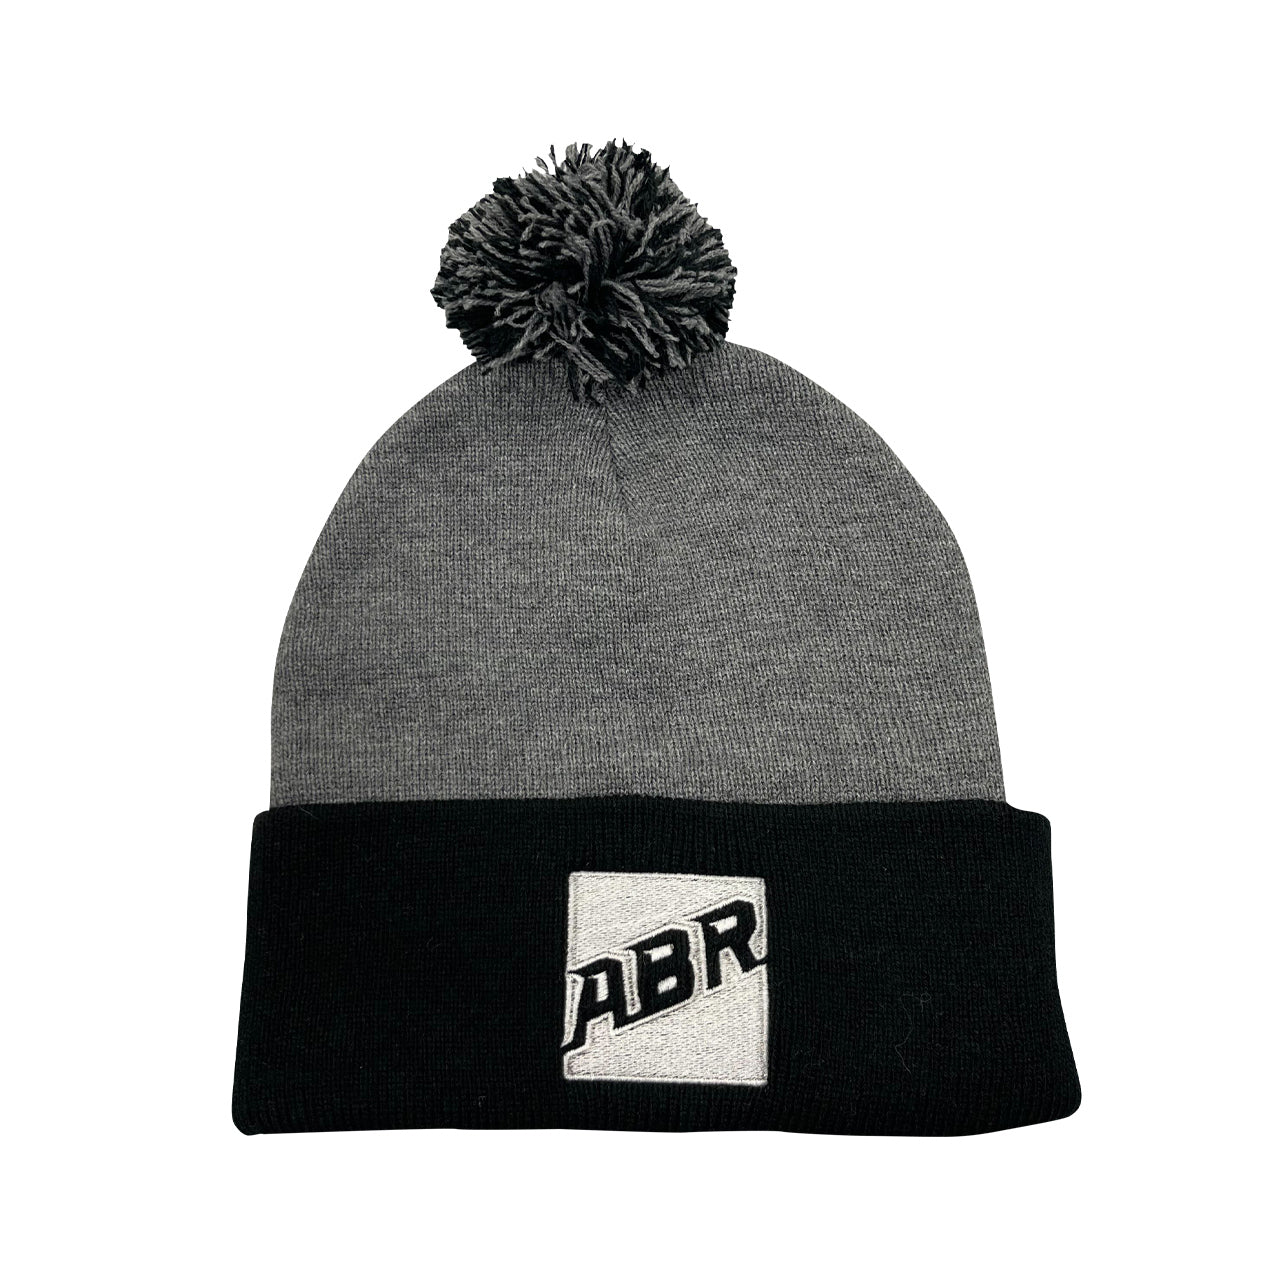 ABR Knit Pom-Pom Beanie - Grey/Black